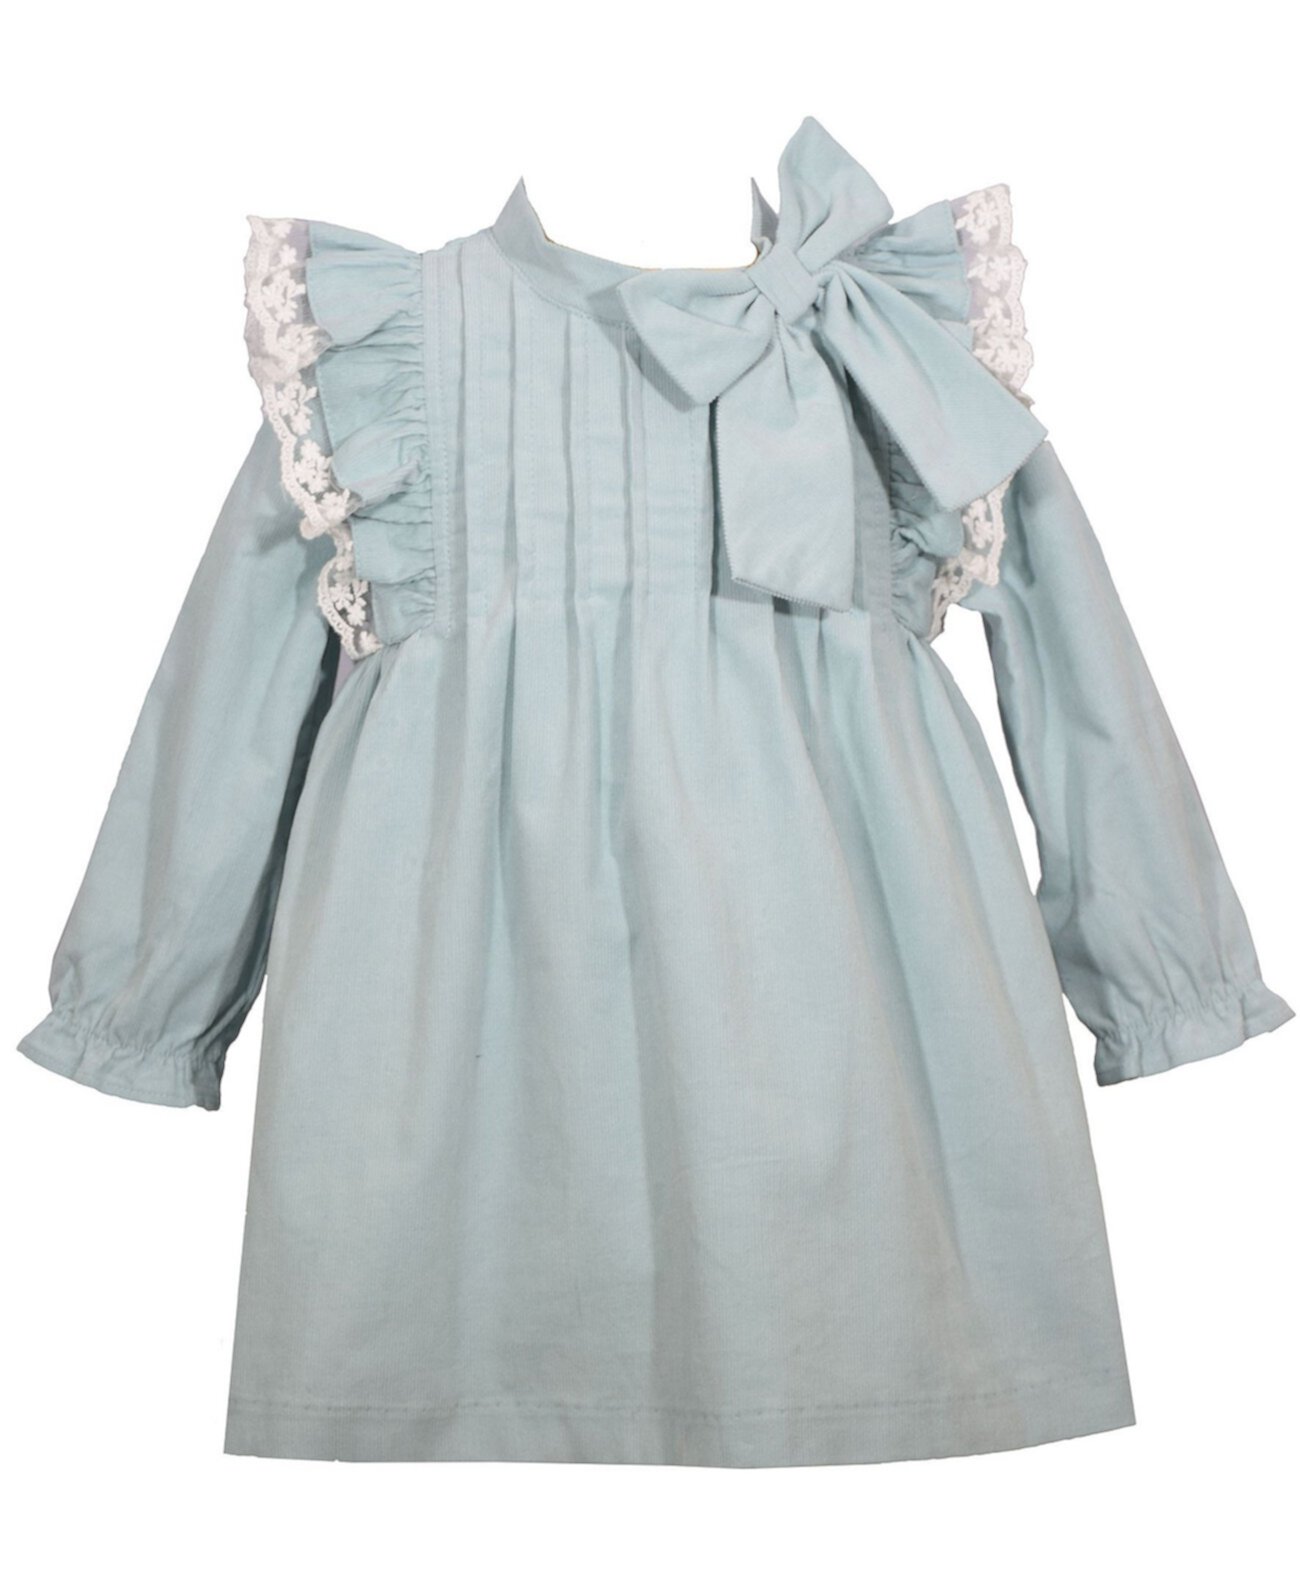 Вельветовое платье для маленьких девочек с кружевной отделкой сарафан, оборками, бантом и подходящими трусиками, комплект из 3 предметов Bonnie Baby